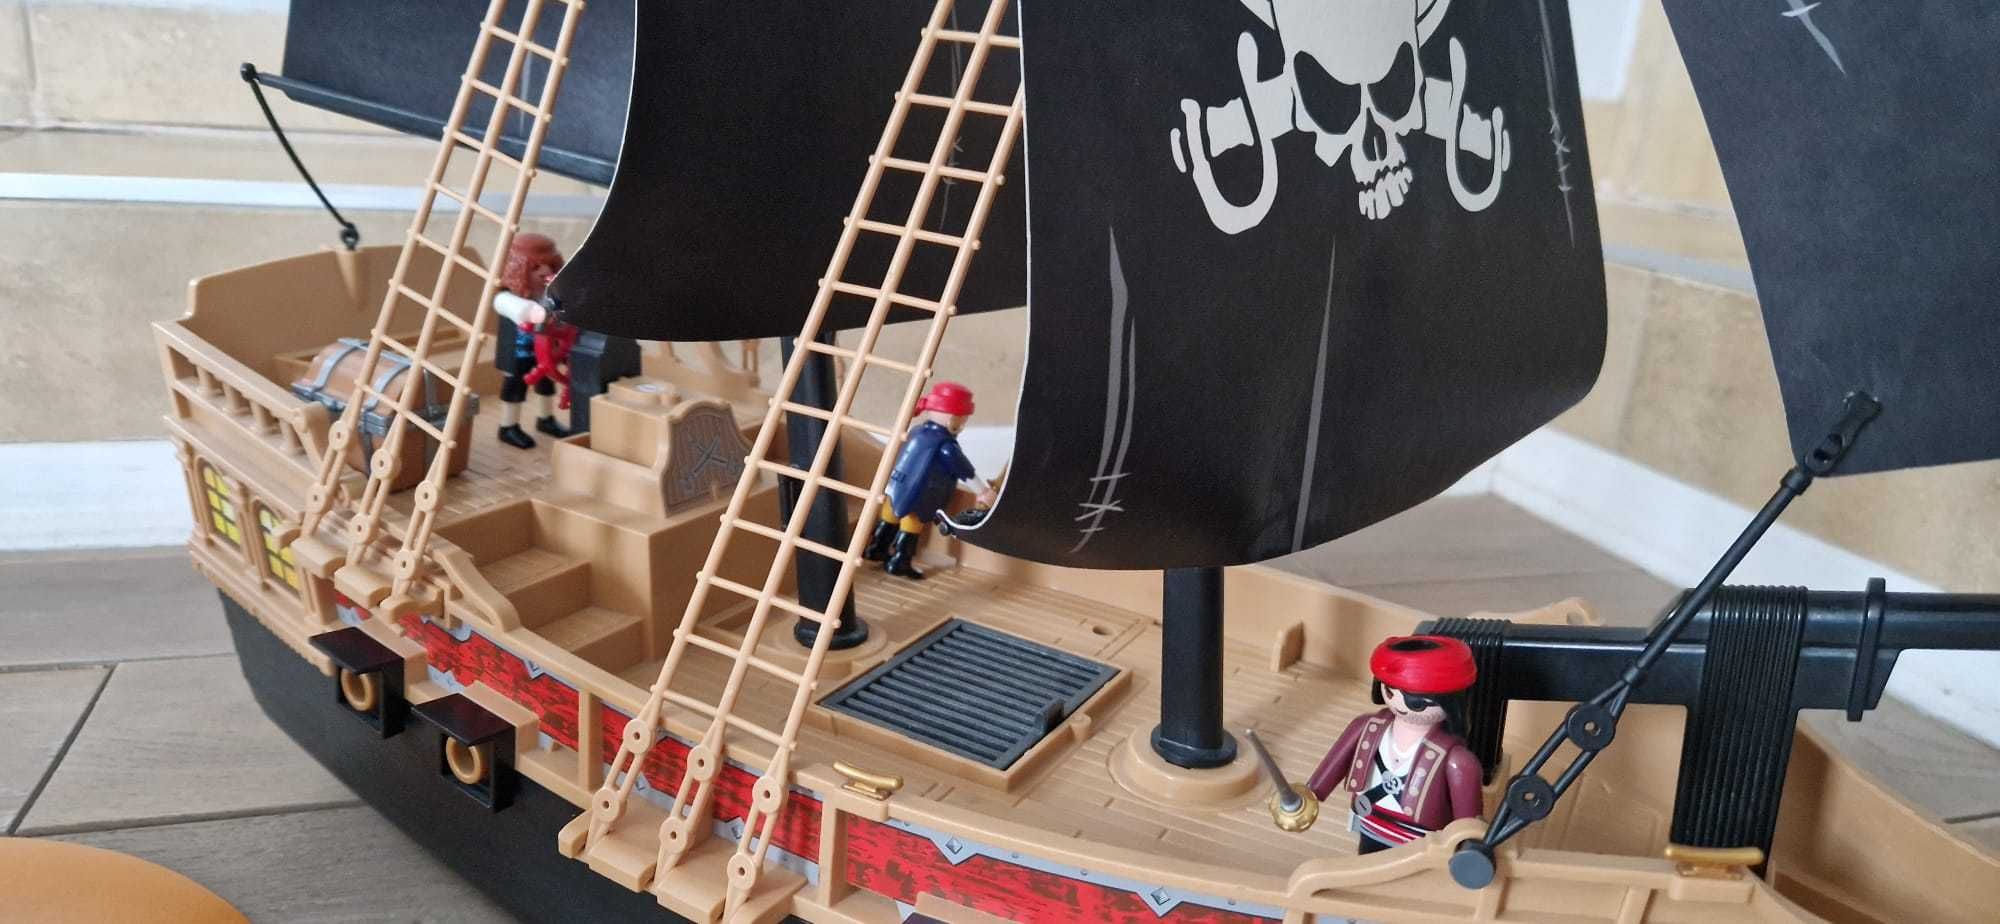 Playmobil statek wyspy piraci